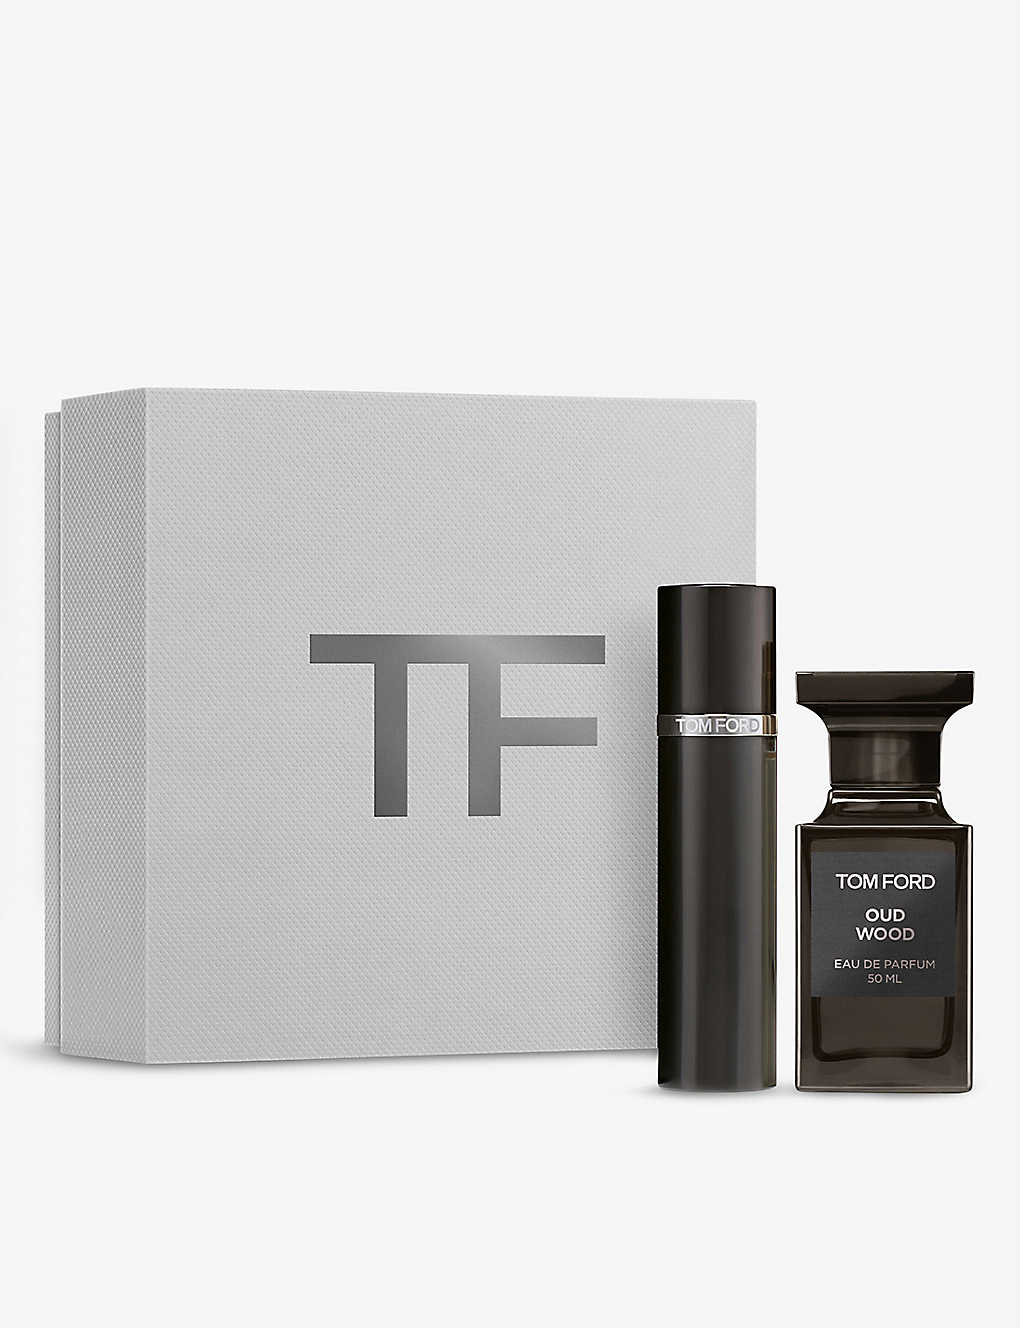 New arrivals TOM FORD Oud Wood eau de parfum gift set - for sale